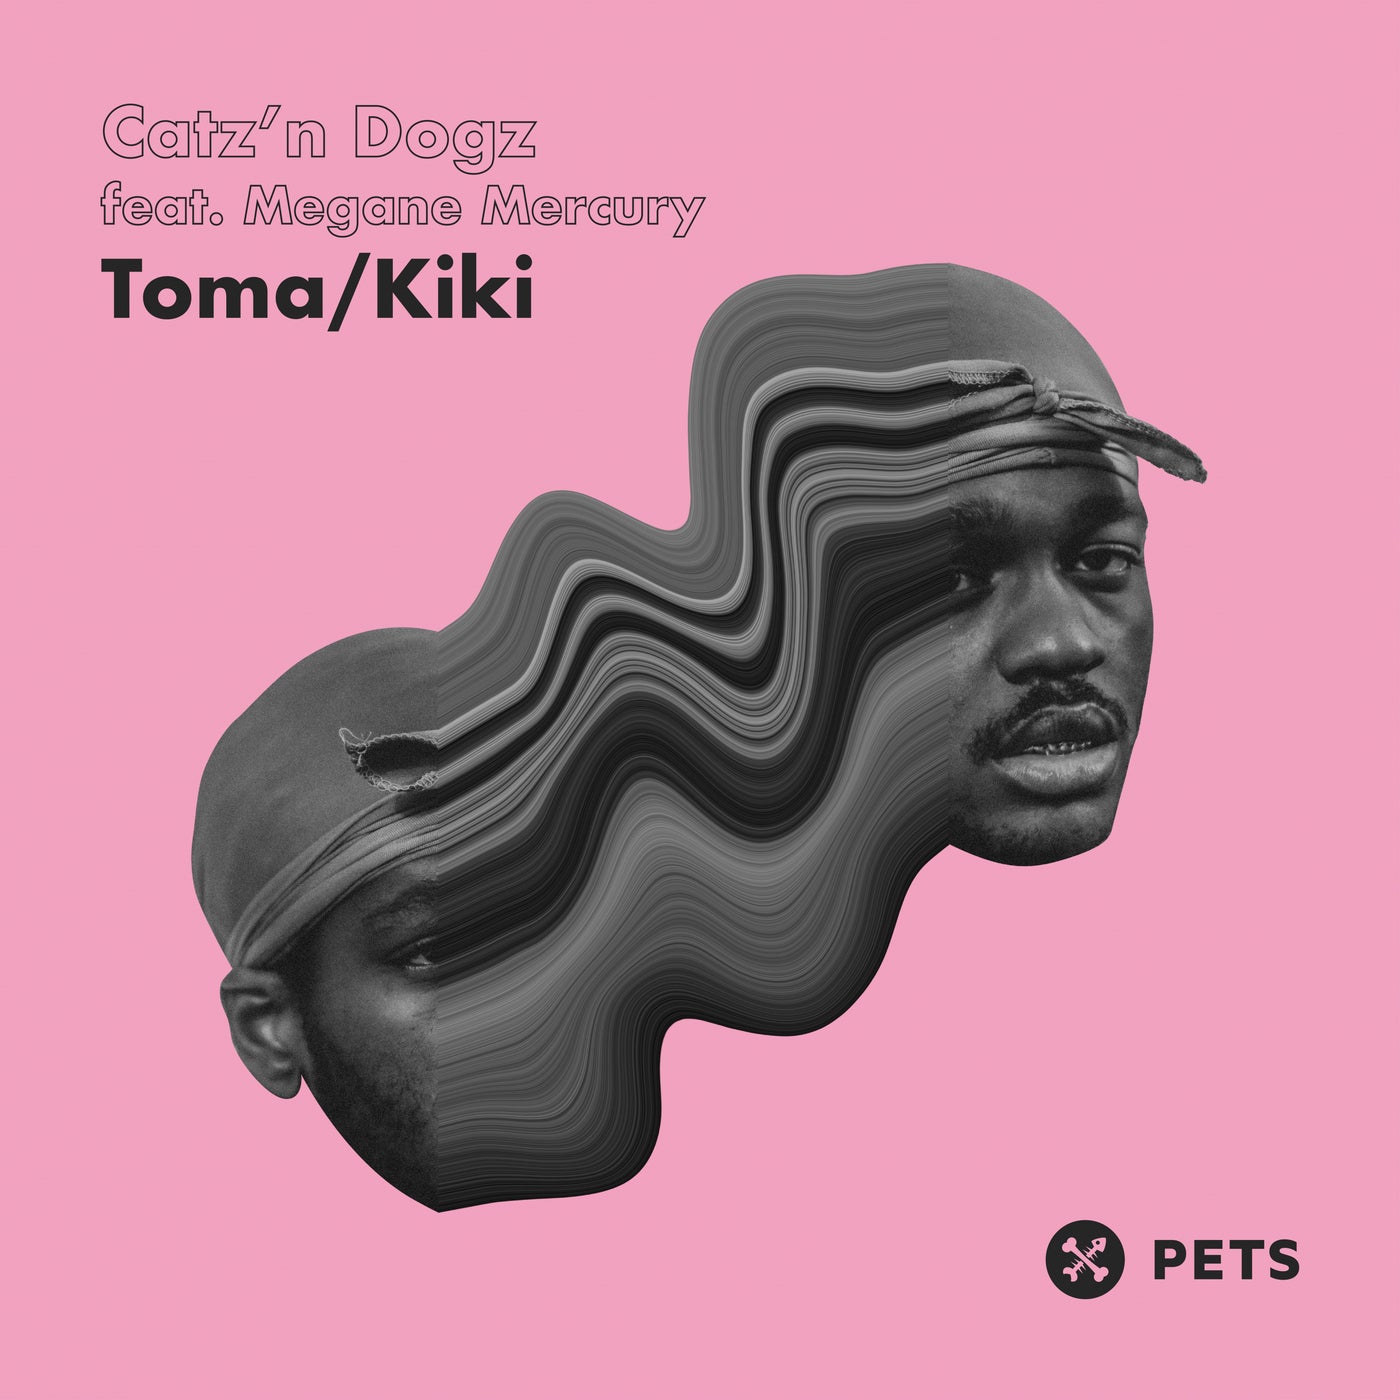 Download Catz 'n Dogz, Megane Mercury - Toma / Kiki EP on Electrobuzz